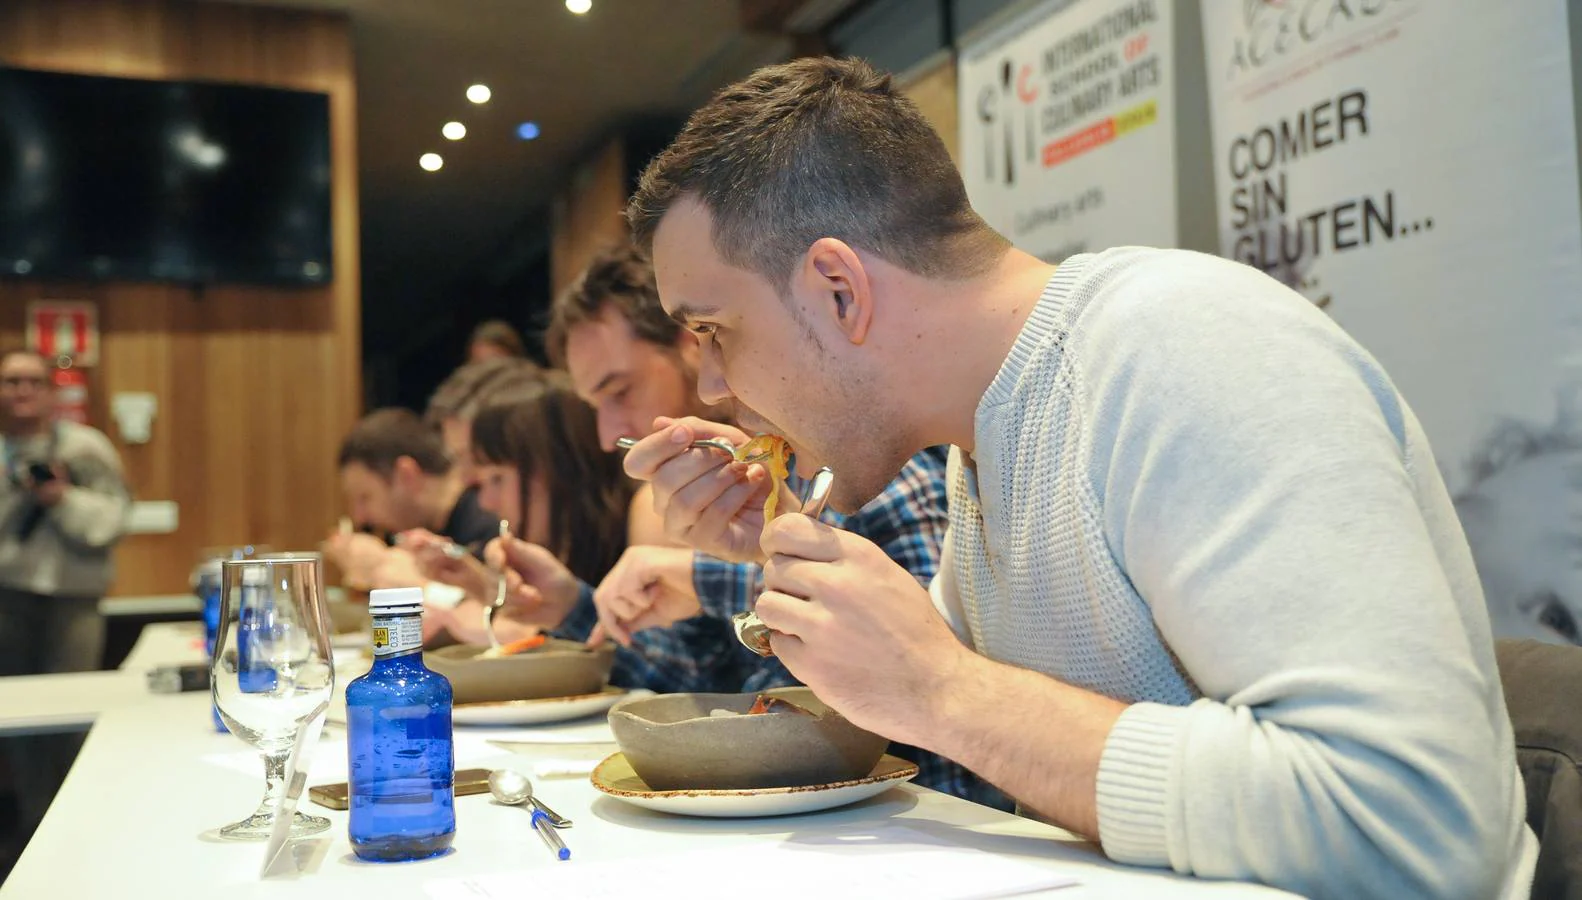 Tres cocineros con estrellas Michelin formaban parte del jurado de este concurso de cocina para celíacos celebrado en la Escuela Internacional de Cocina Fernando Pérez de Valladolid